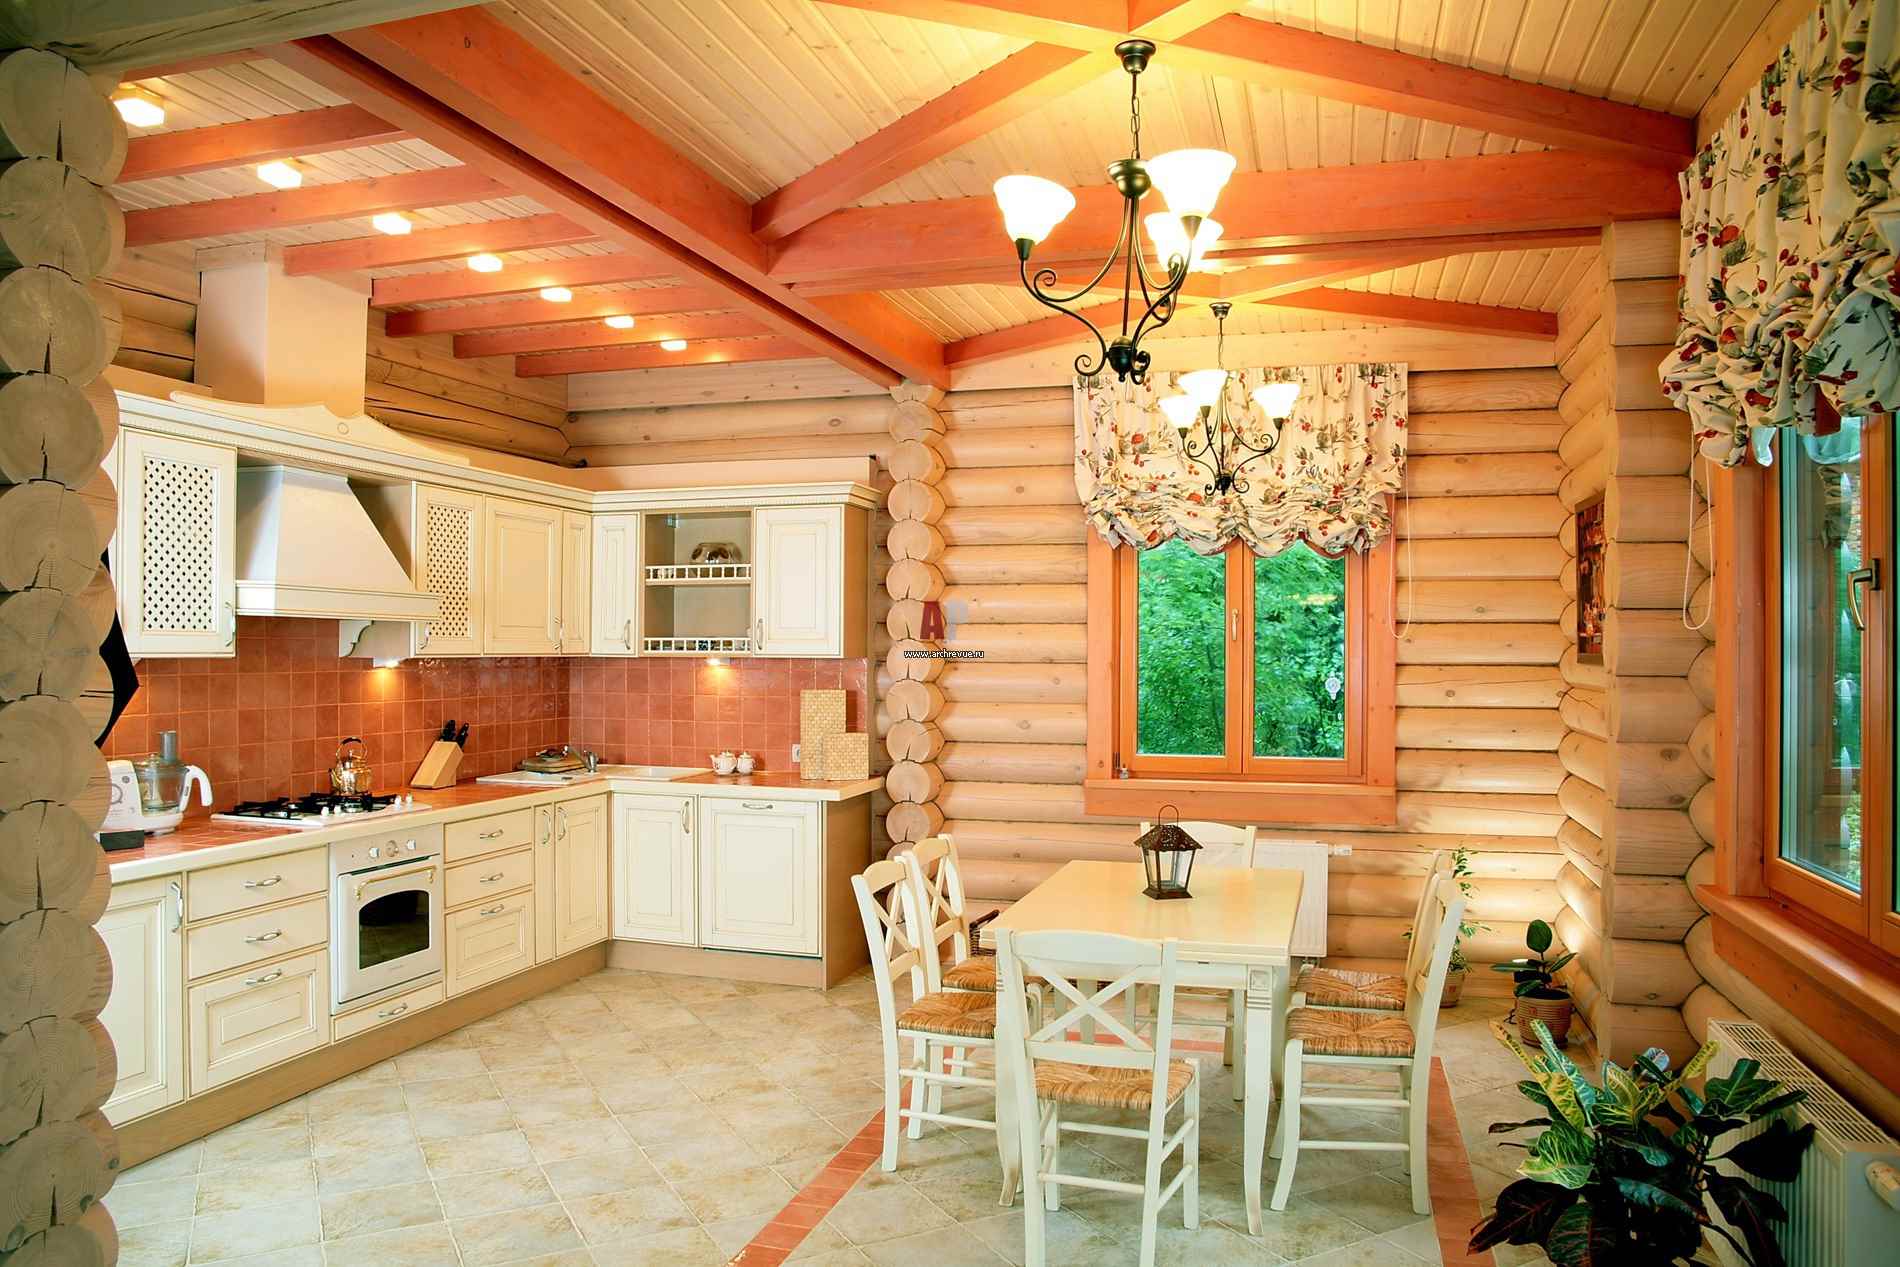 Un esempio di uno stile cucina luminoso in una casa di legno